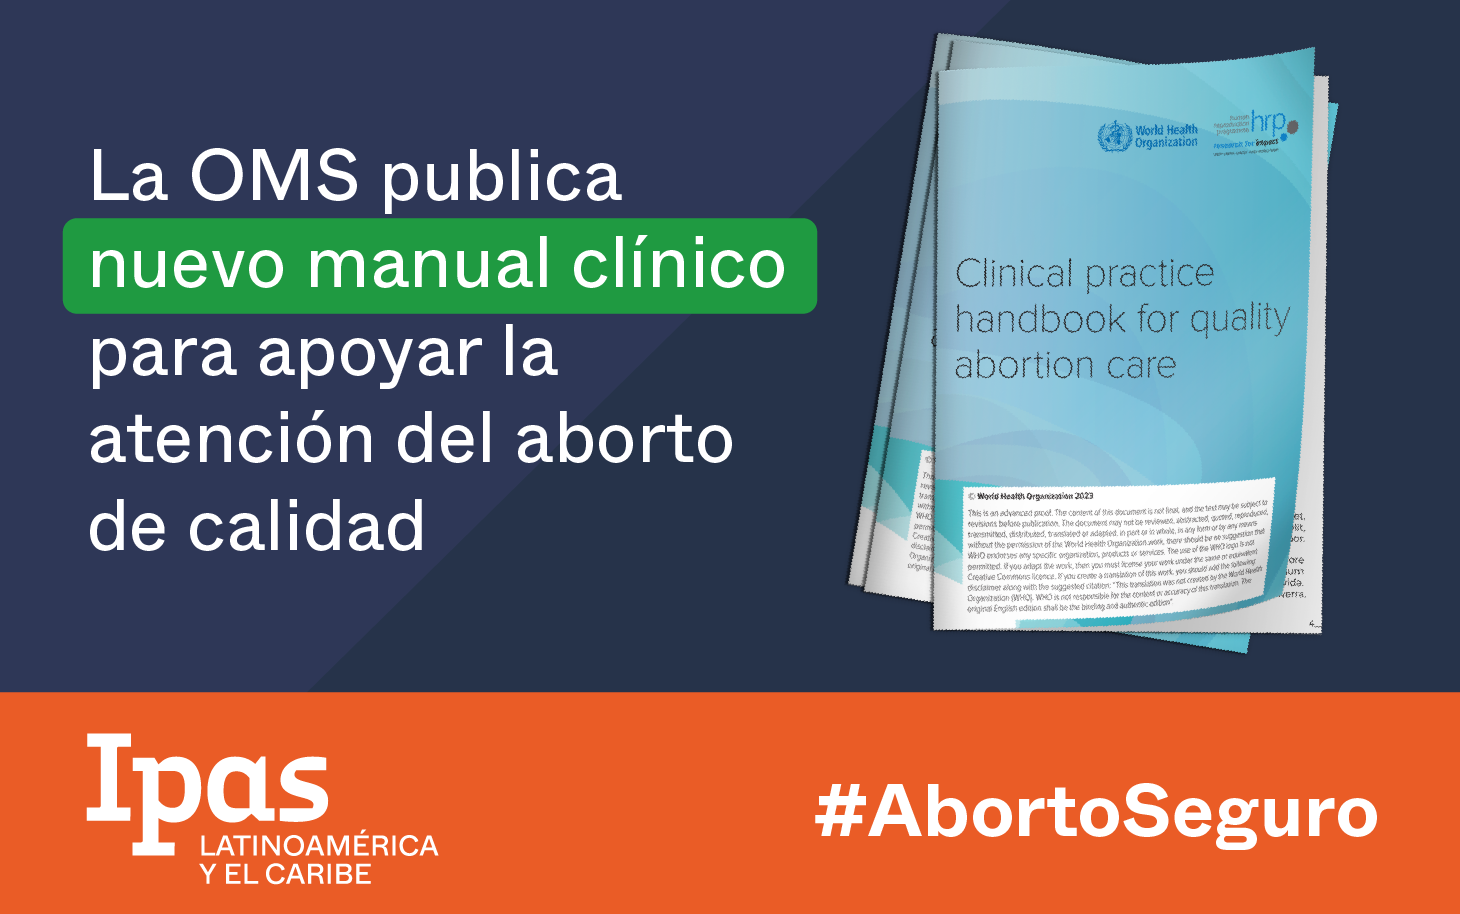 La OMS publica nuevo manual clínico para apoyar la atención del aborto de calidad